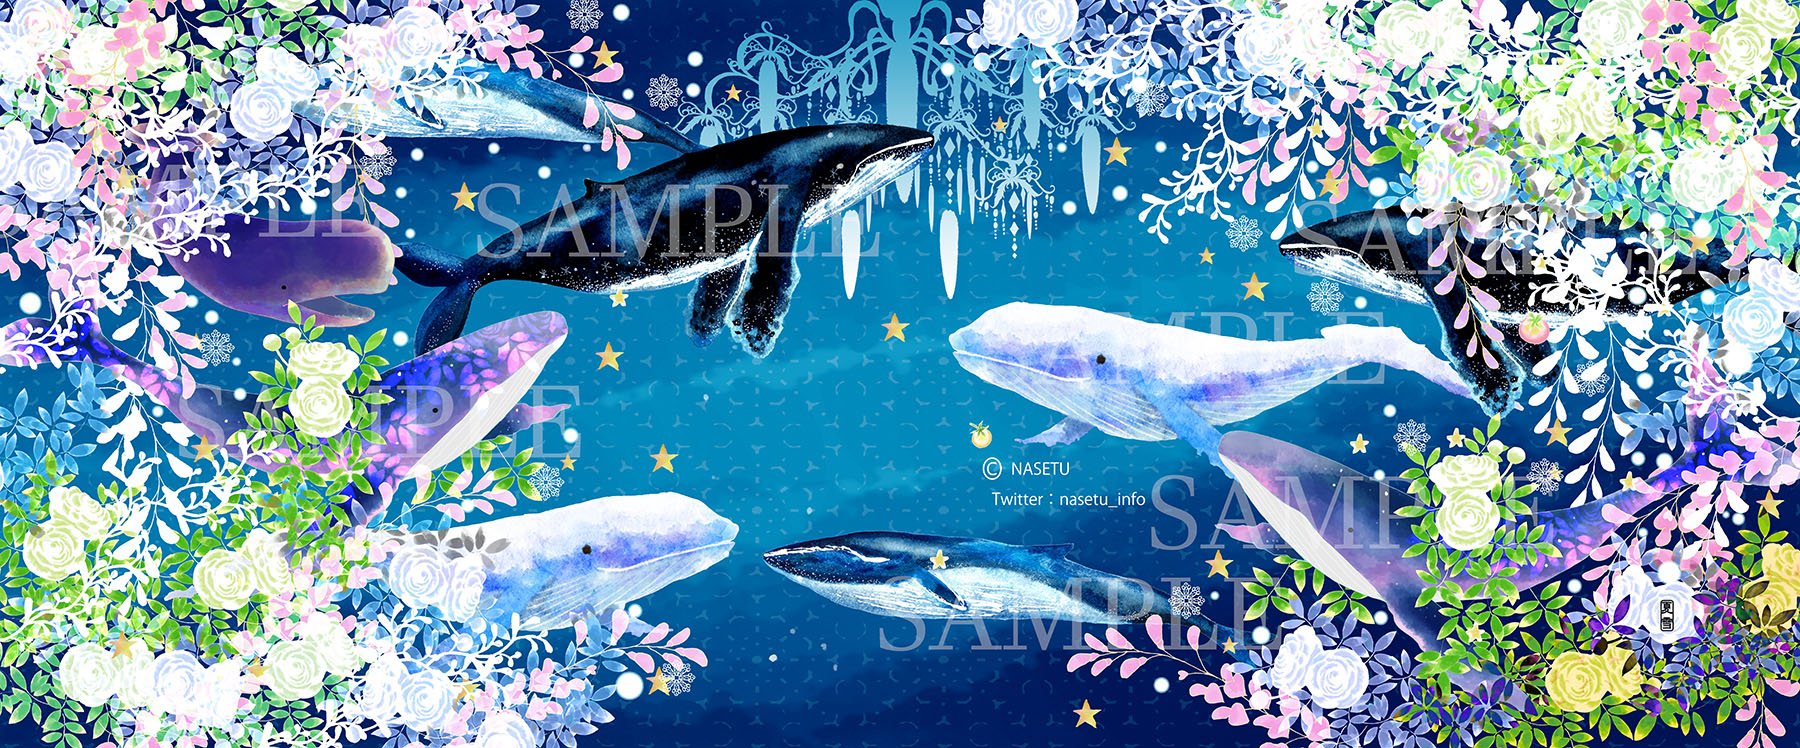 تويتر 夏雪 なせつ 和と動植物イラストレーター على تويتر 海の日 ということなので 新しいものではないですが大好きなクジラを描いたもの 手ぬぐいのデザインです クジラ イラスト T Co T4us1fp0du